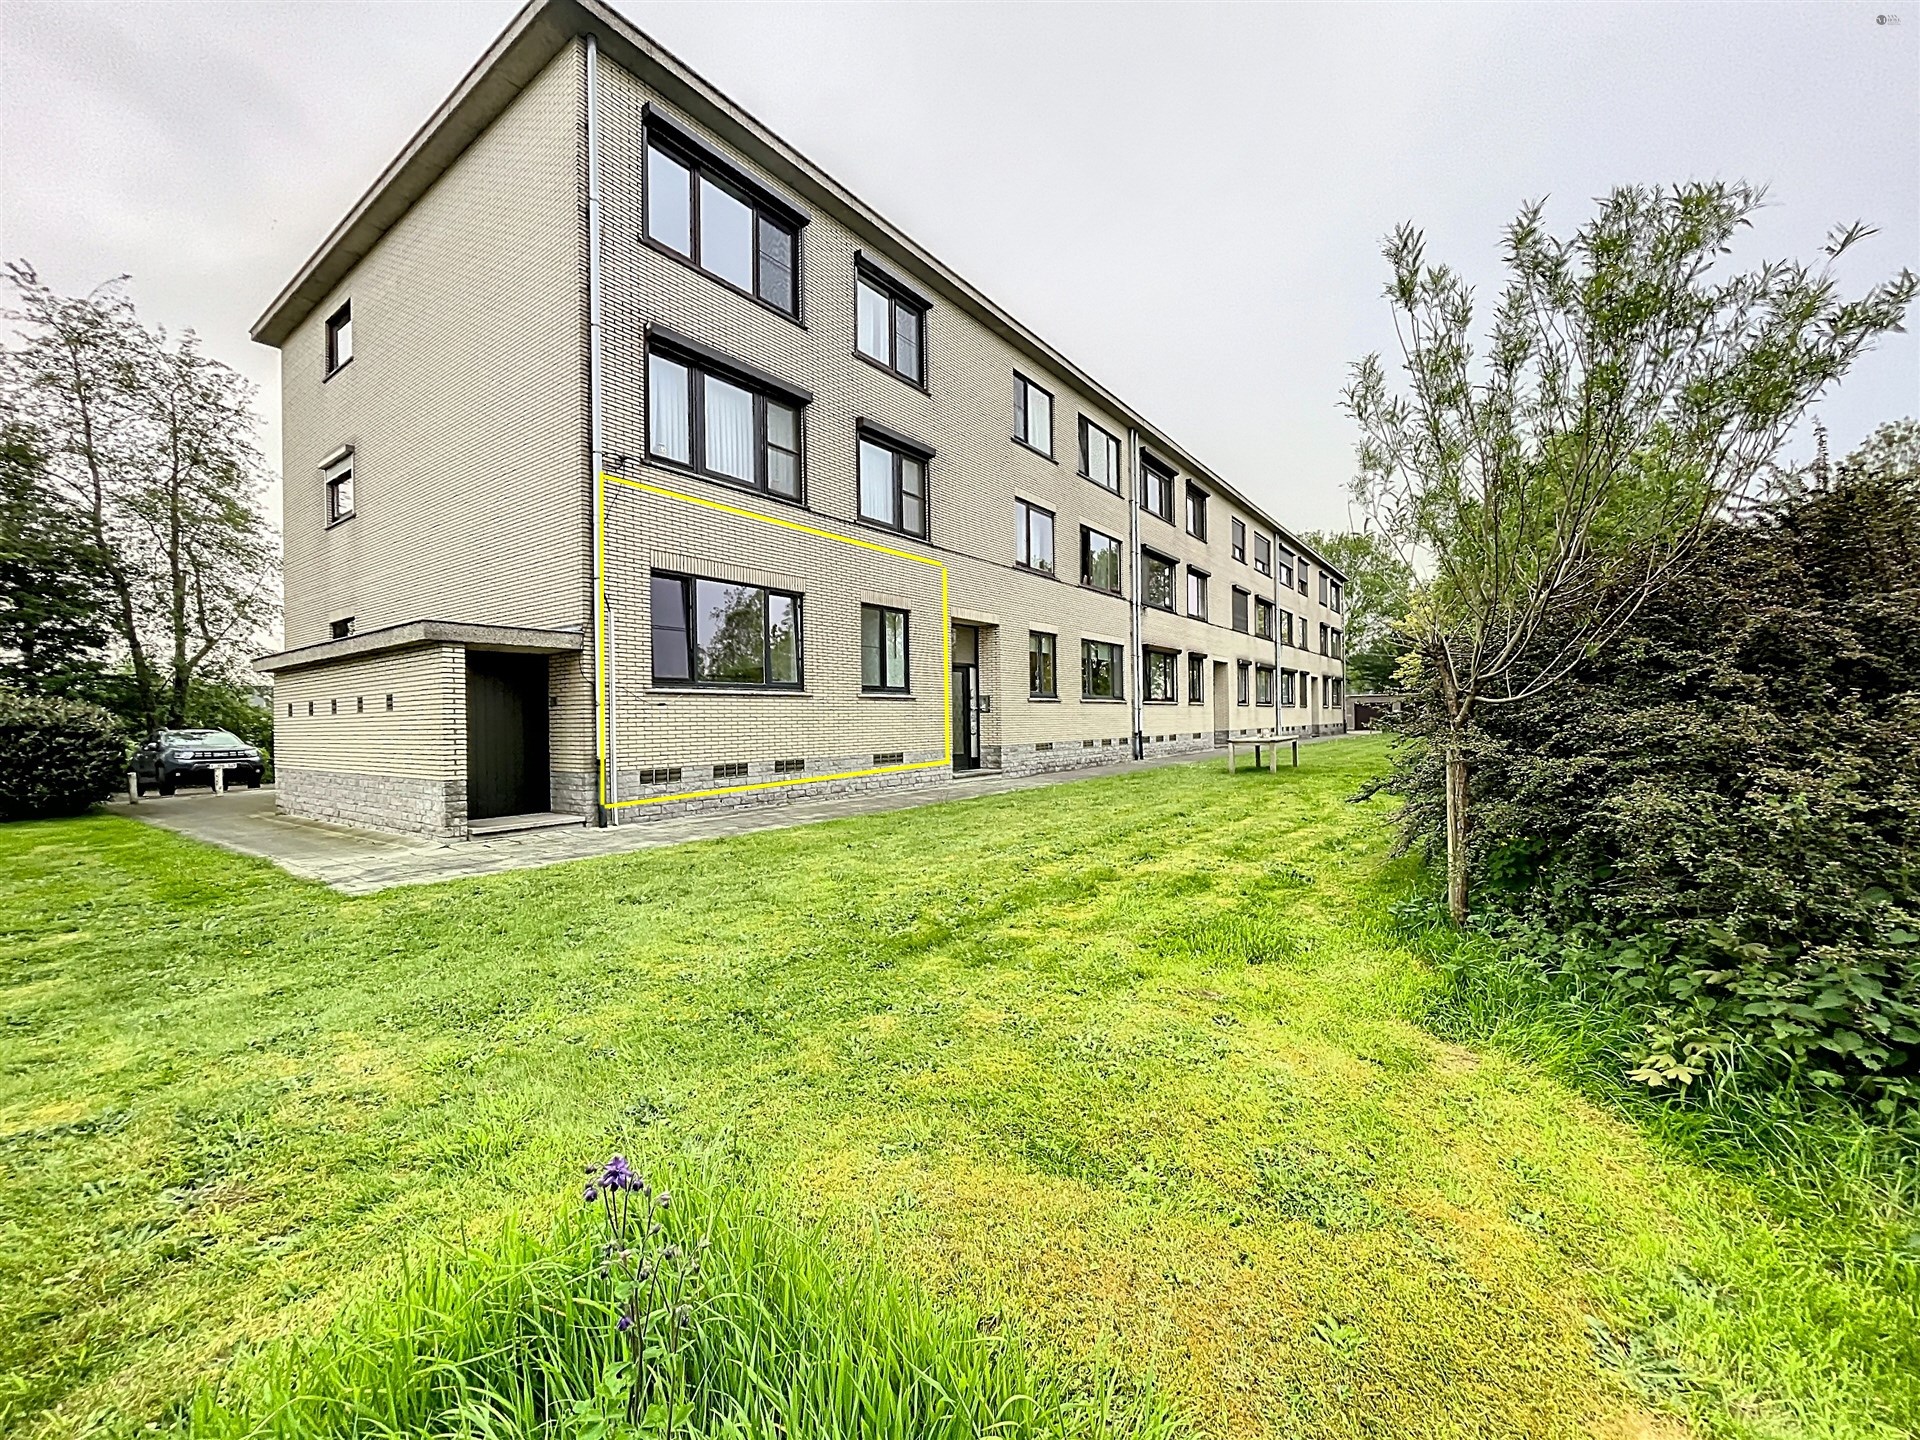 Instapklaar appartement met 2 slaapkamers, garagebox en tuin gelegen op toplocatie in Belsele! foto 1